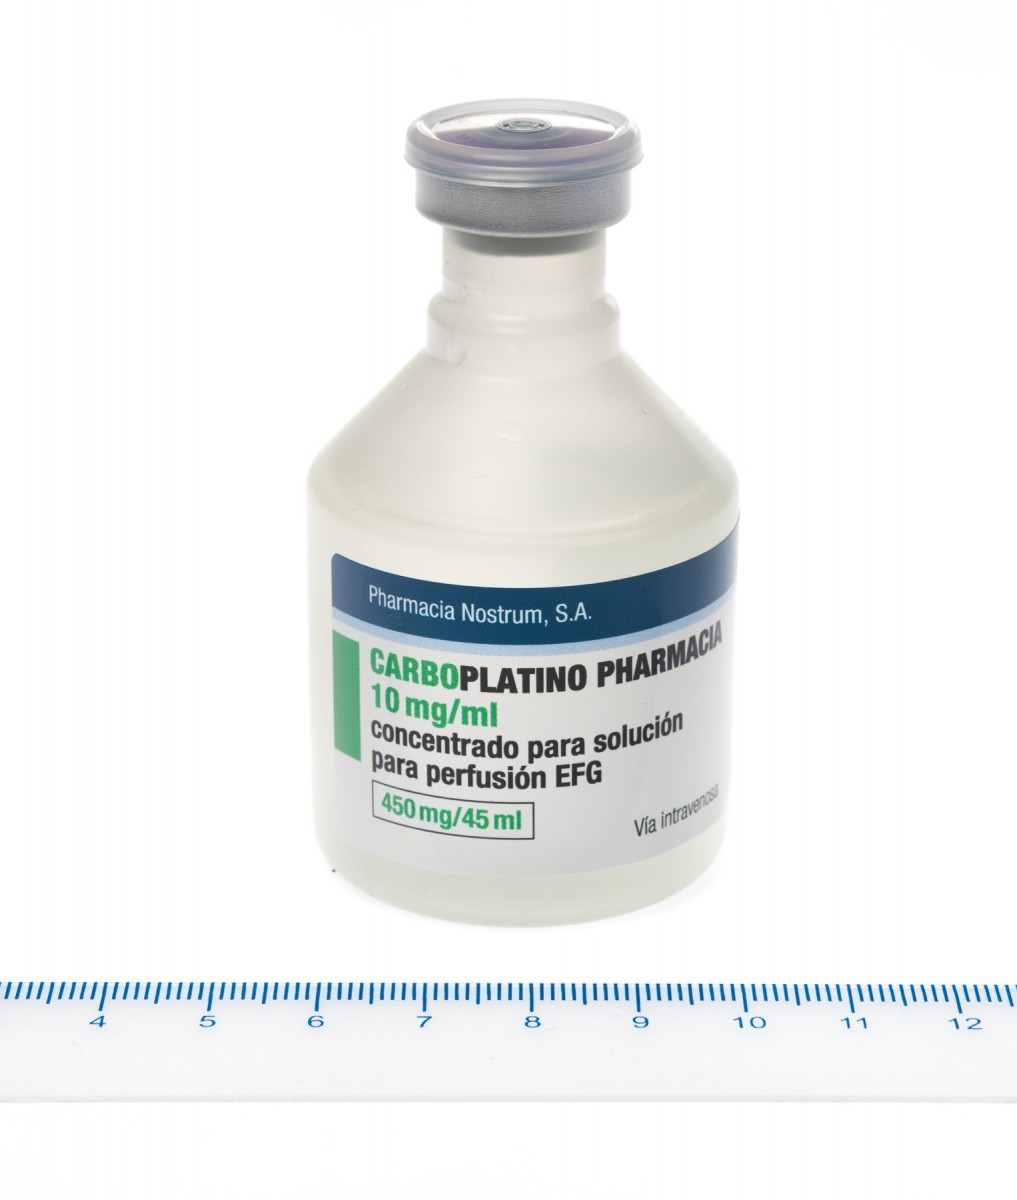 CARBOPLATINO PHARMACIA 10 mg/ml CONCENTRADO PARA SOLUCION PARA PERFUSION EFG, 1 vial de 15 ml fotografía de la forma farmacéutica.